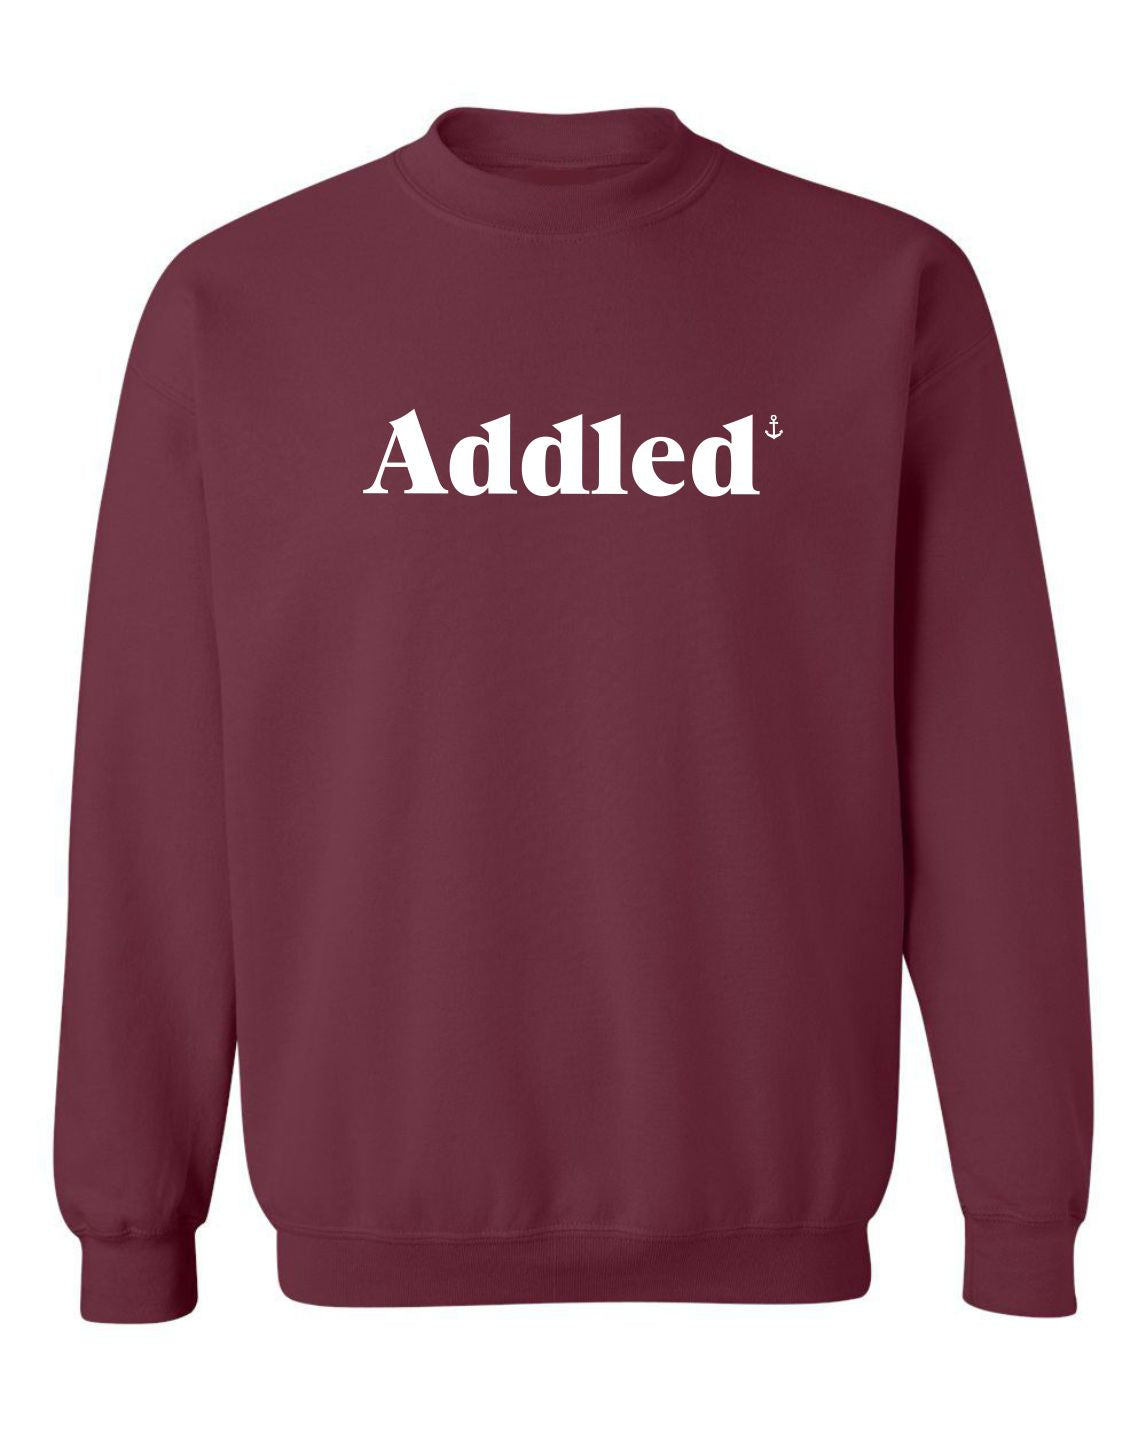 "Addled" Unisex Crewneck Sweatshirt